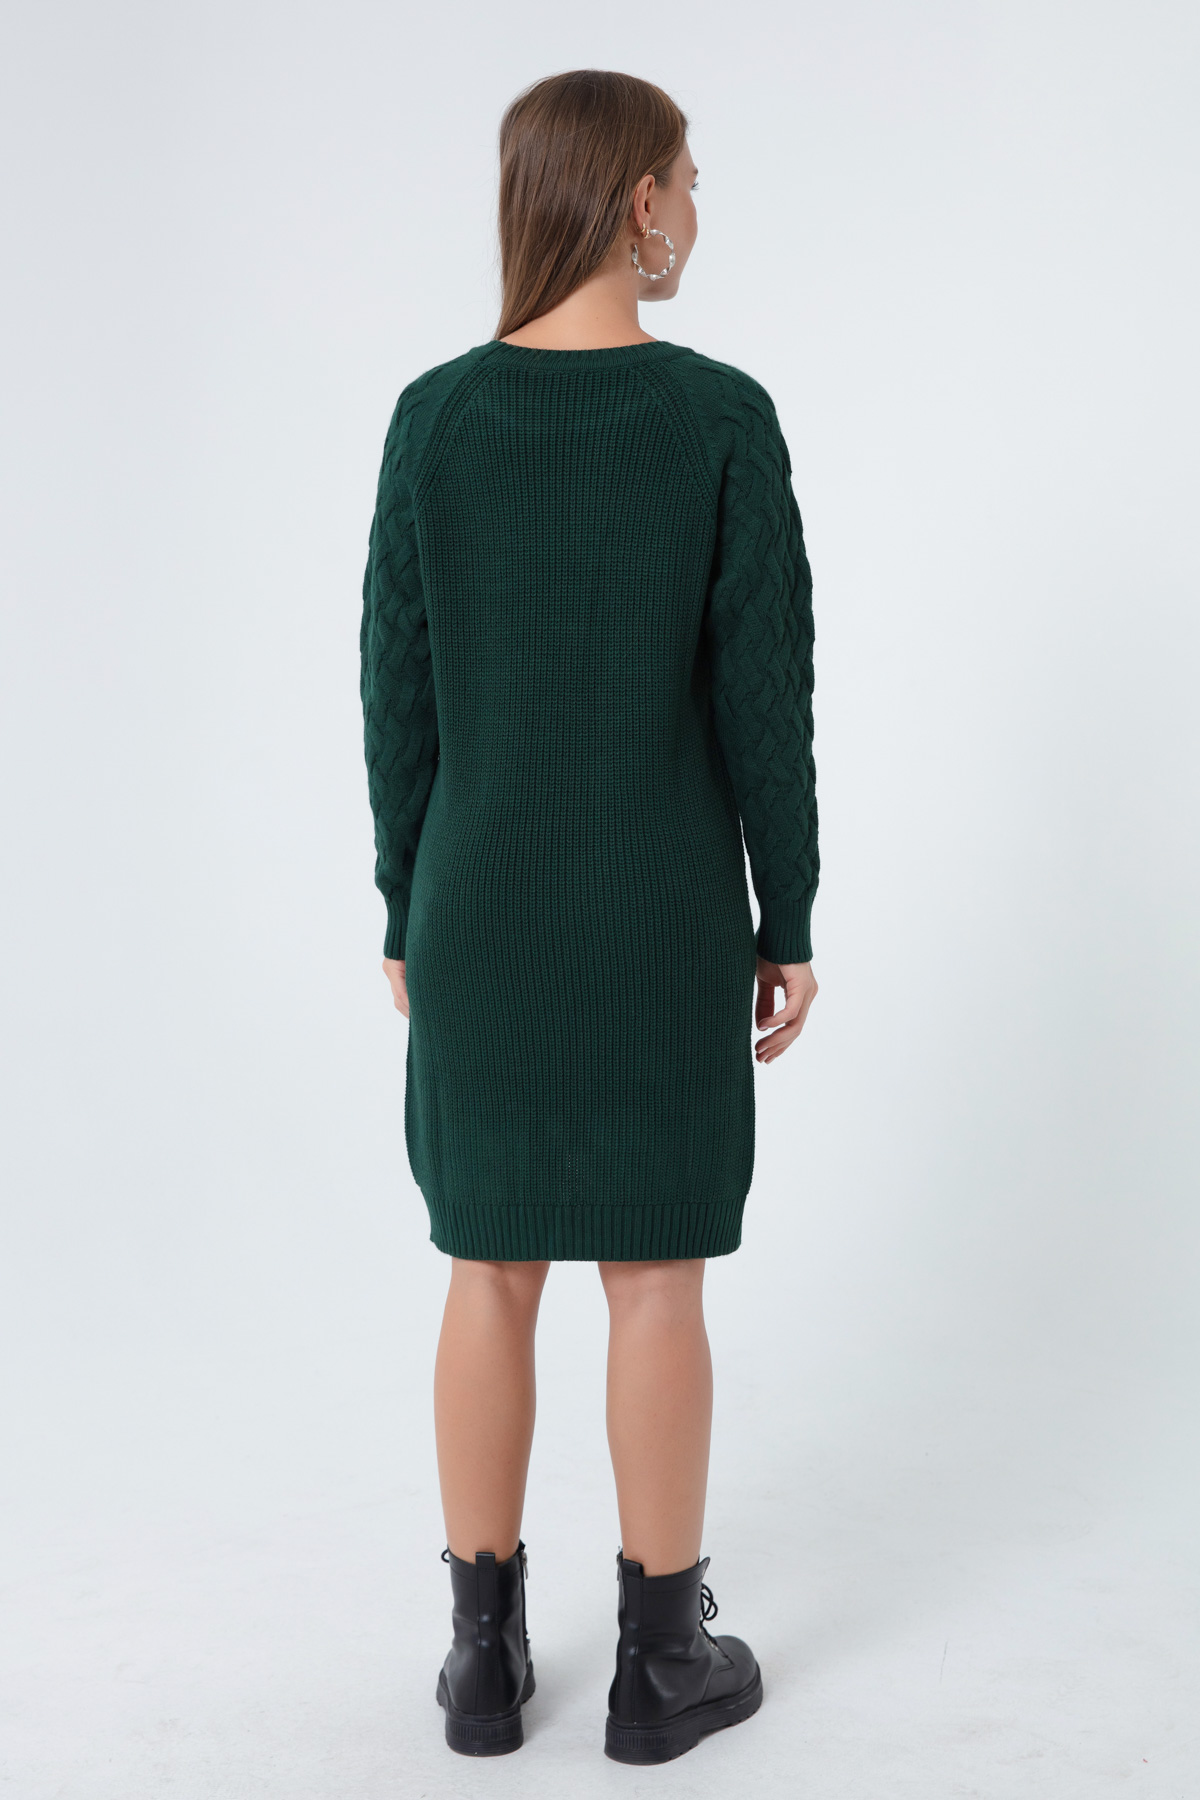 Women's Green Italian Sleeve Dress